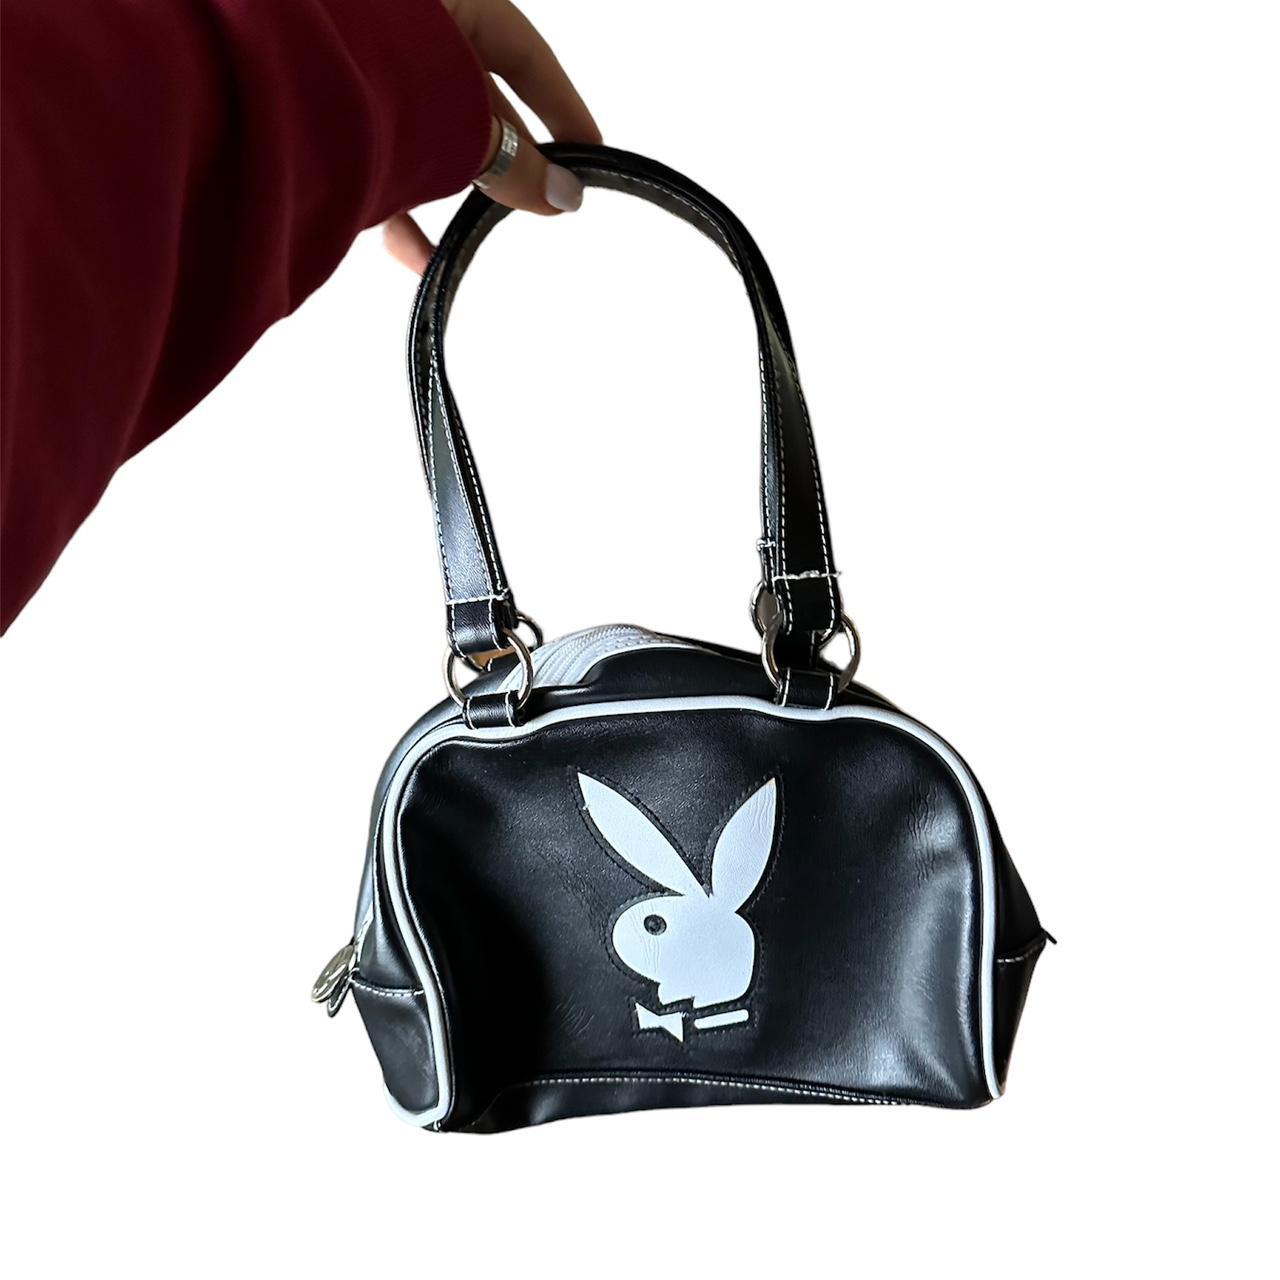 Playboy authentic vintage monogram shoulder bag - Depop